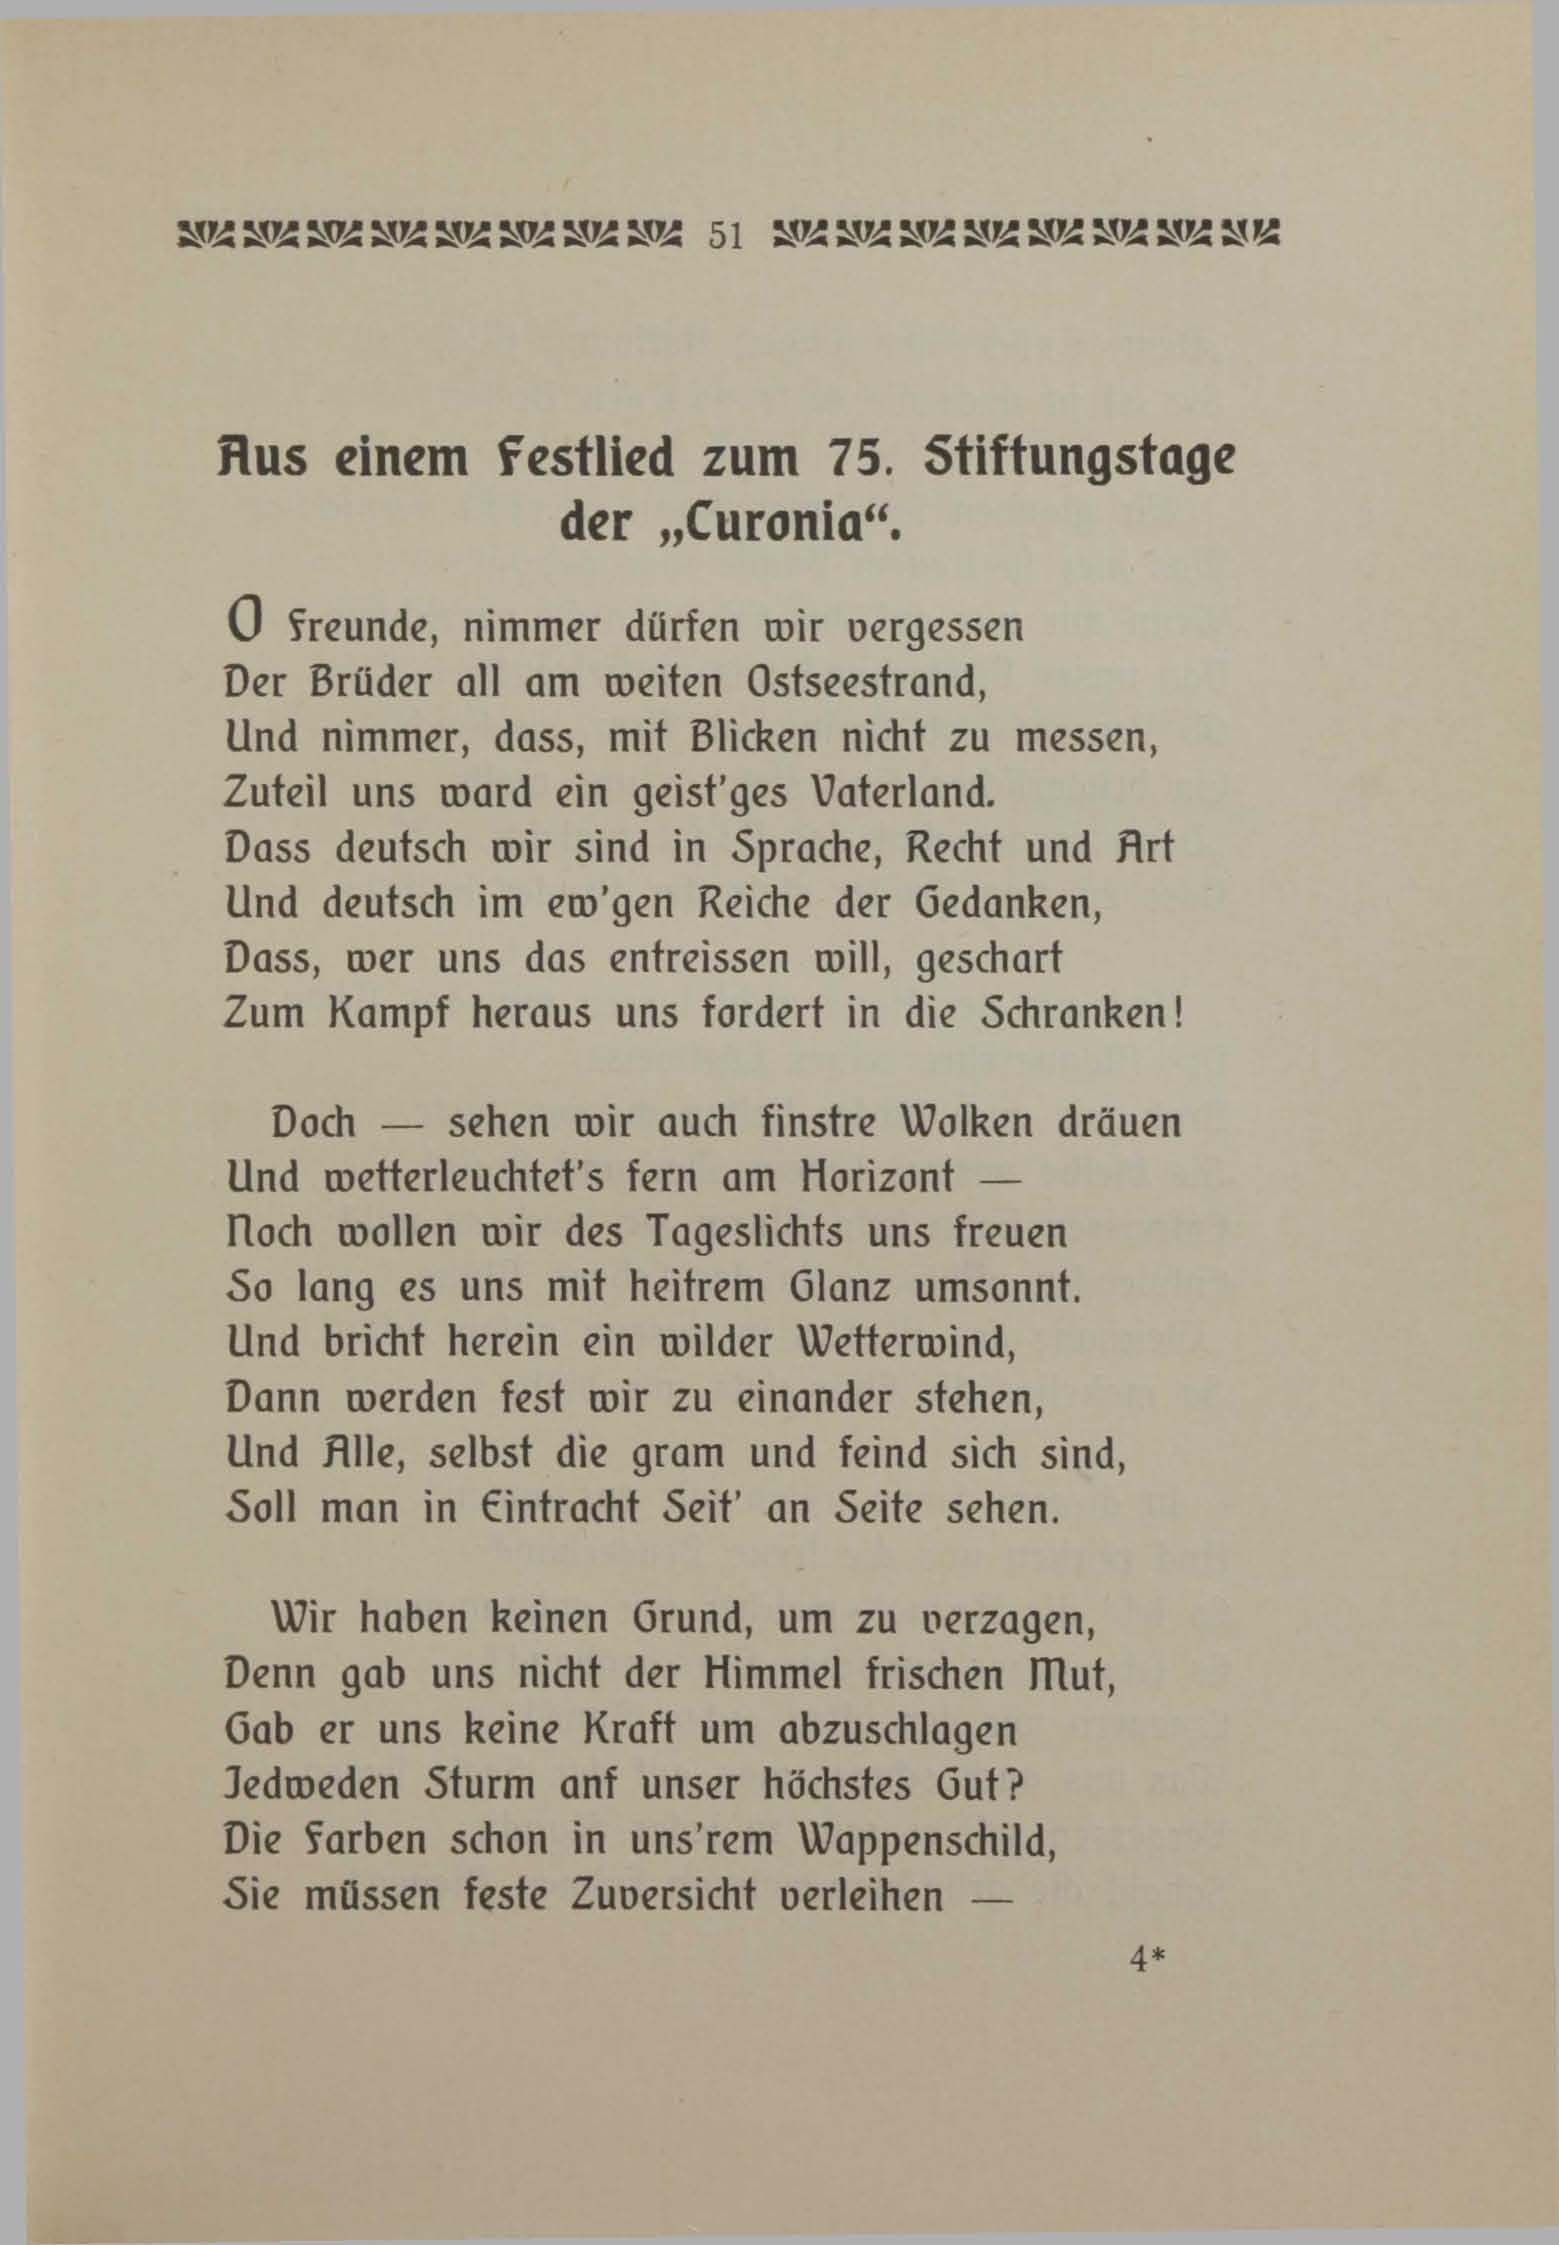 Aus einem Festlied zum 75. Stiftungstage der "Curonia" (1906) | 1. (51) Main body of text